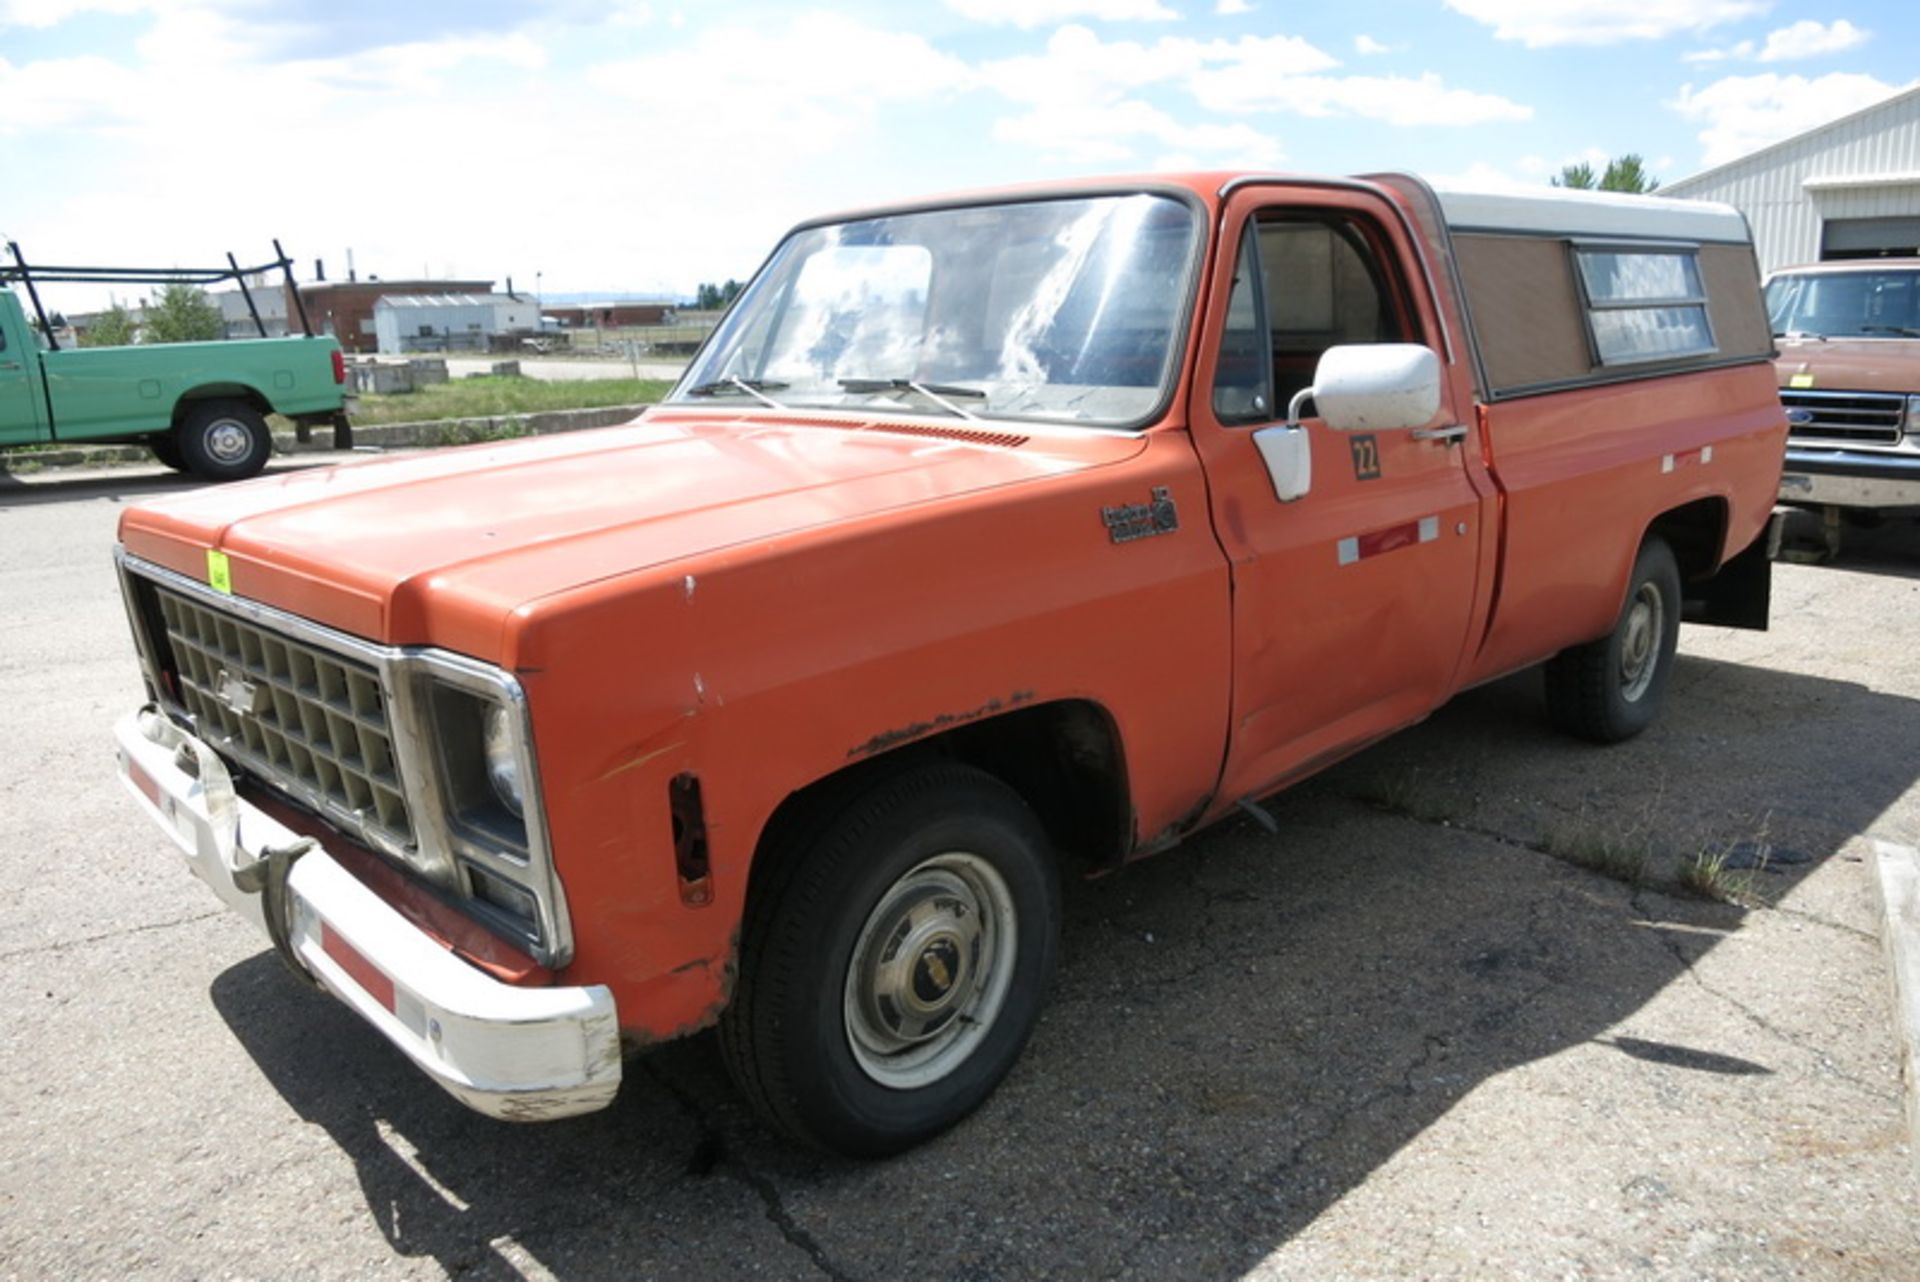 1980 Chevrolet Custom Delux 10 pickup truck, with camper shelkl, 56,004 miles VIN: CCD14AF314011,